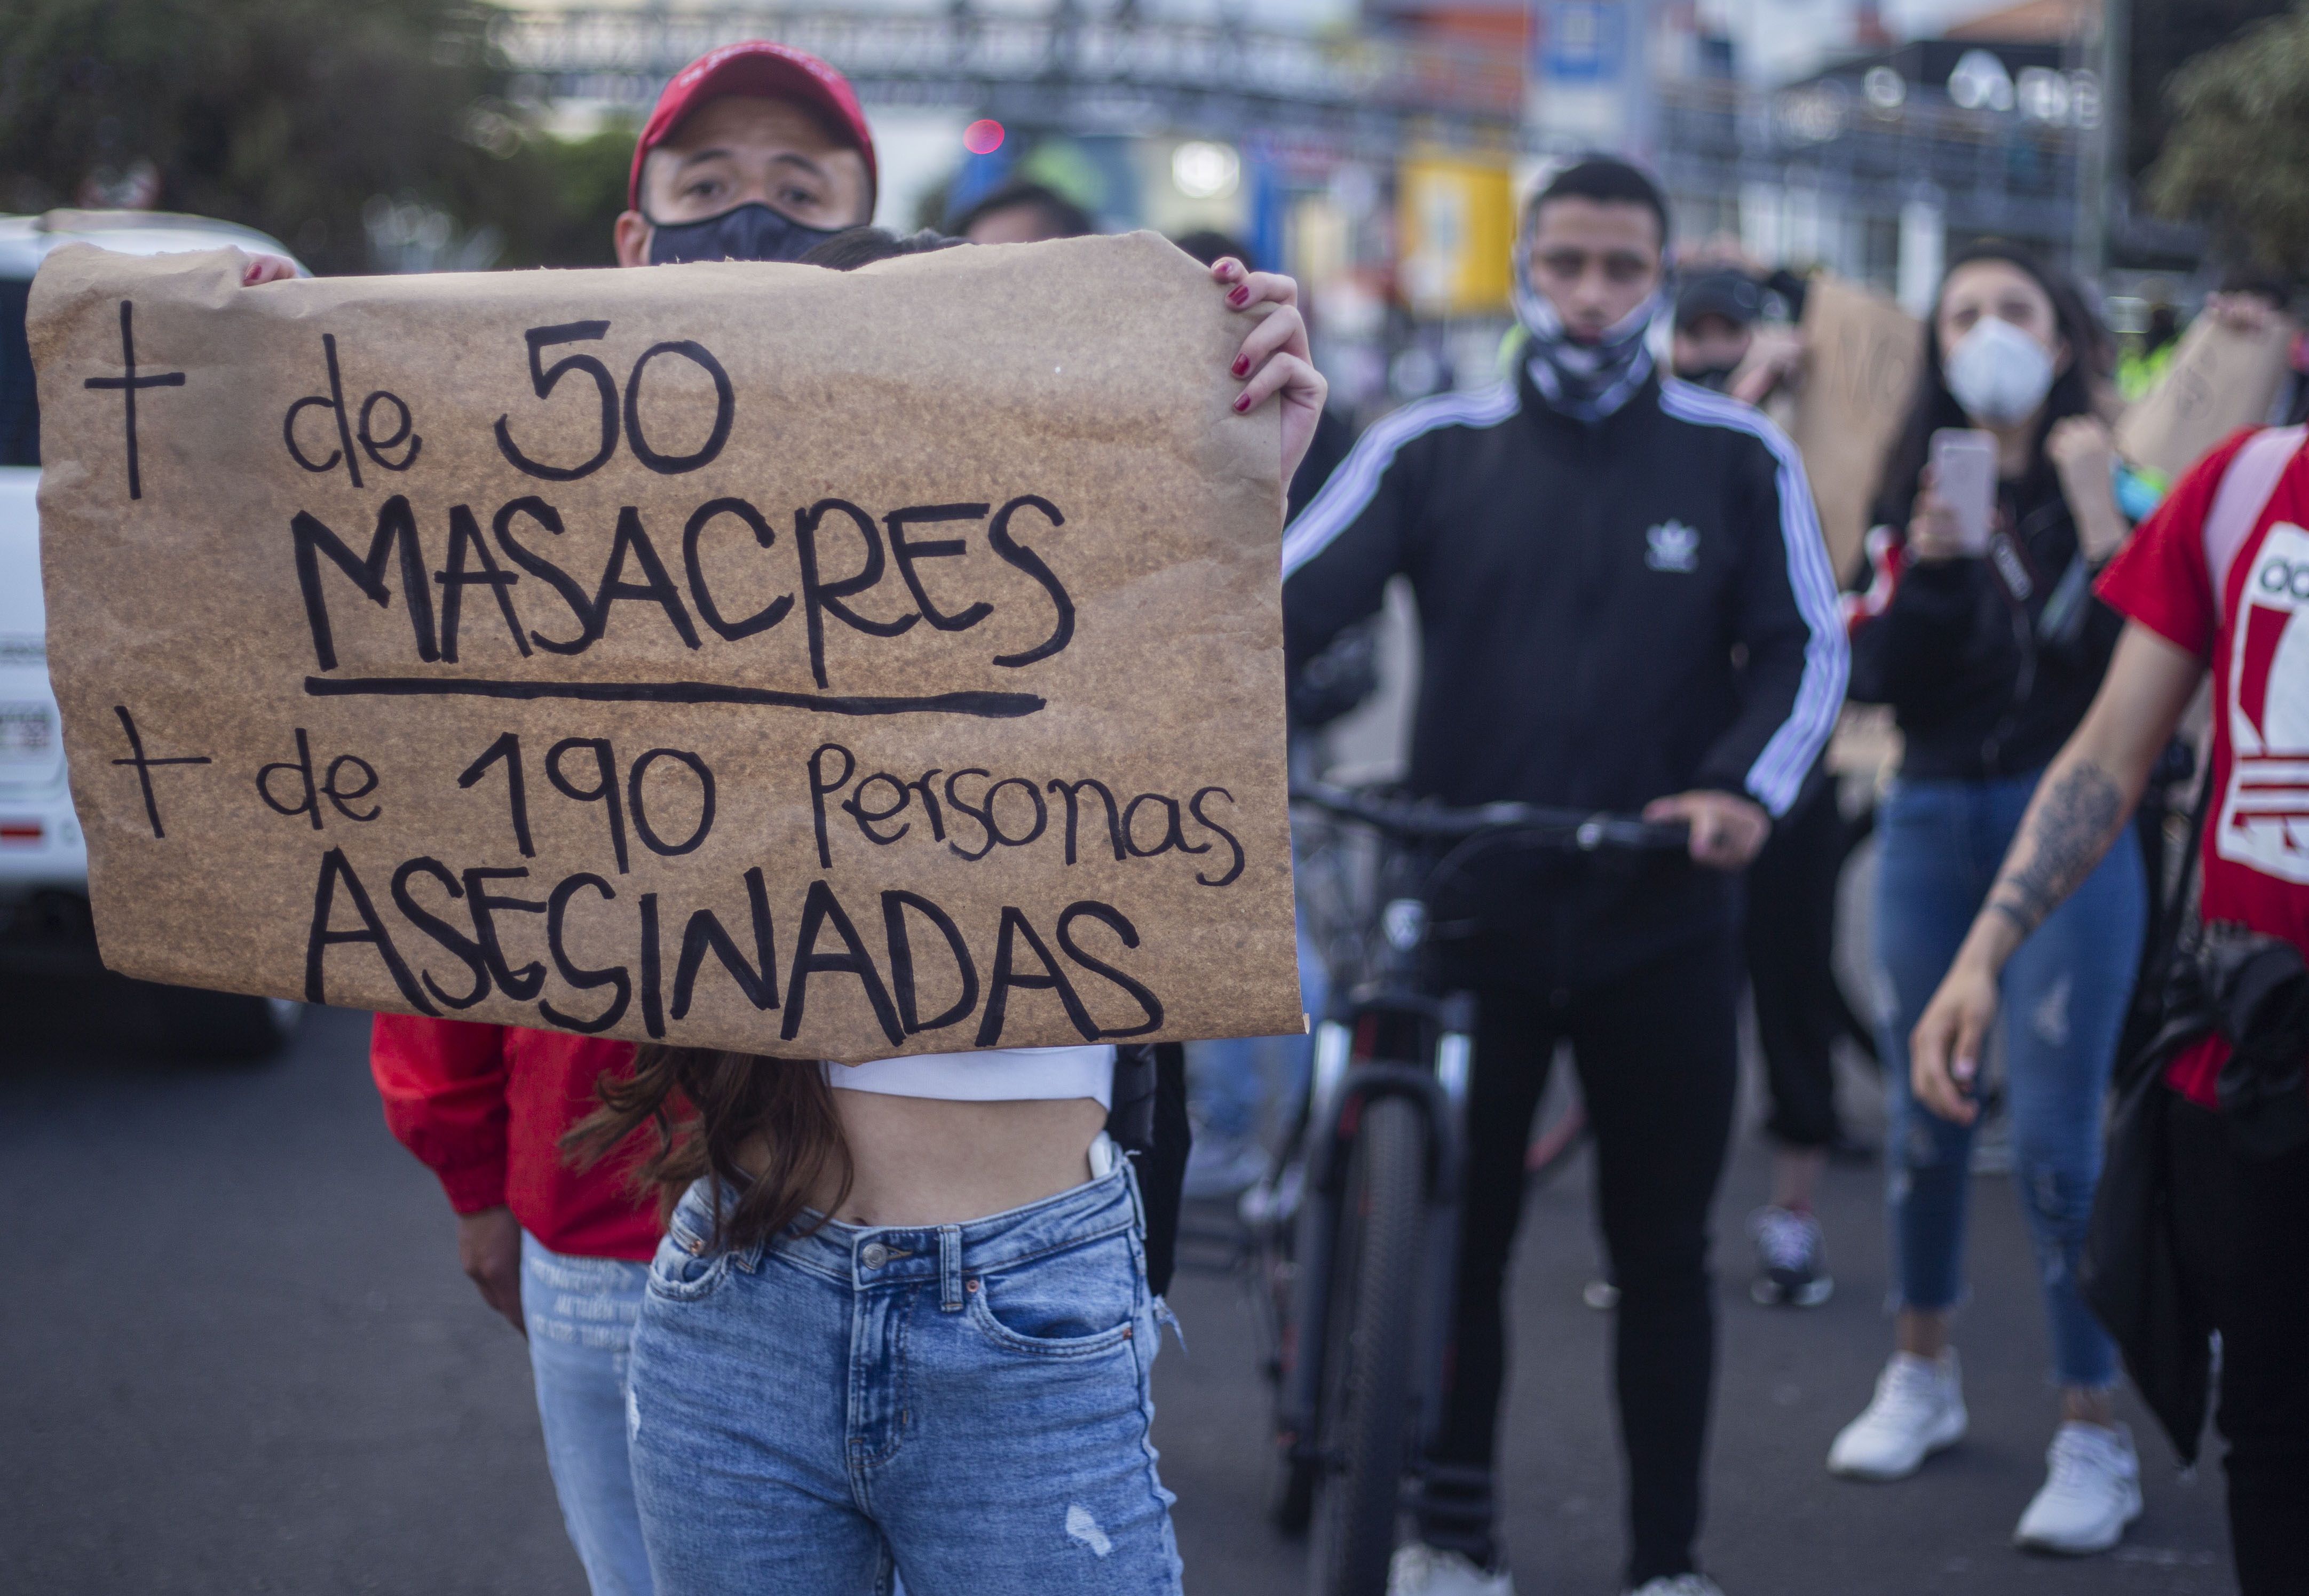 17/09/2020 Manifestación celebrada recientemente en Bogotá, para protestar contra las últimas masacres ocurridas en varios departamentos del país. POLITICA SUDAMÉRICA LATINOAMÉRICA COLOMBIA INTERNACIONAL DANIEL GARZON HERAZO / ZUMA PRESS / CONTACTOPHOTO 